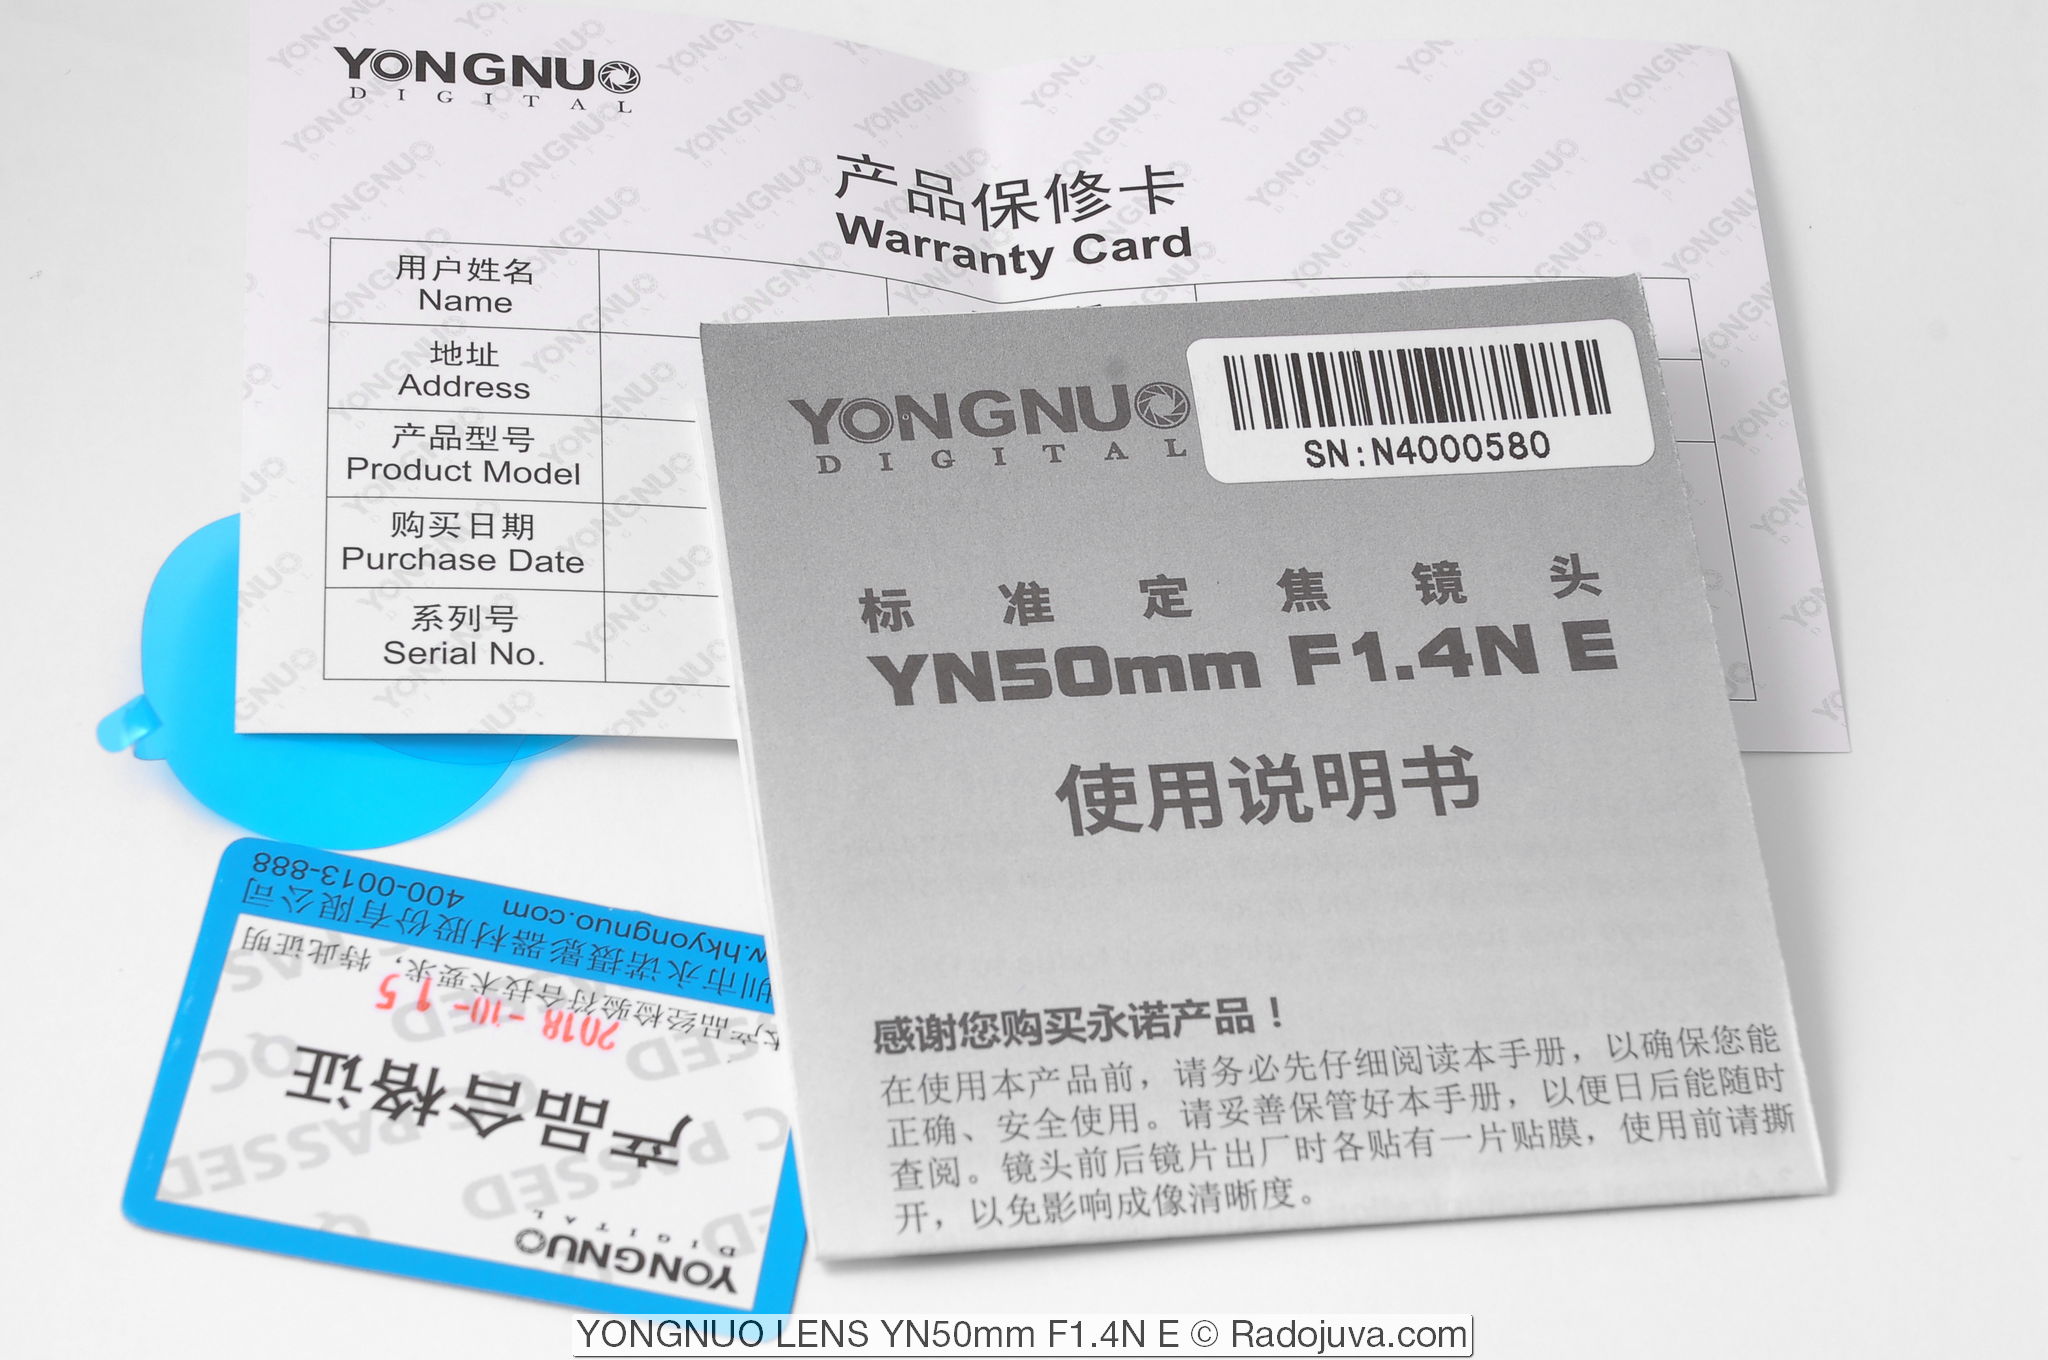 YONGNUO LENS YN50mm F1.4N